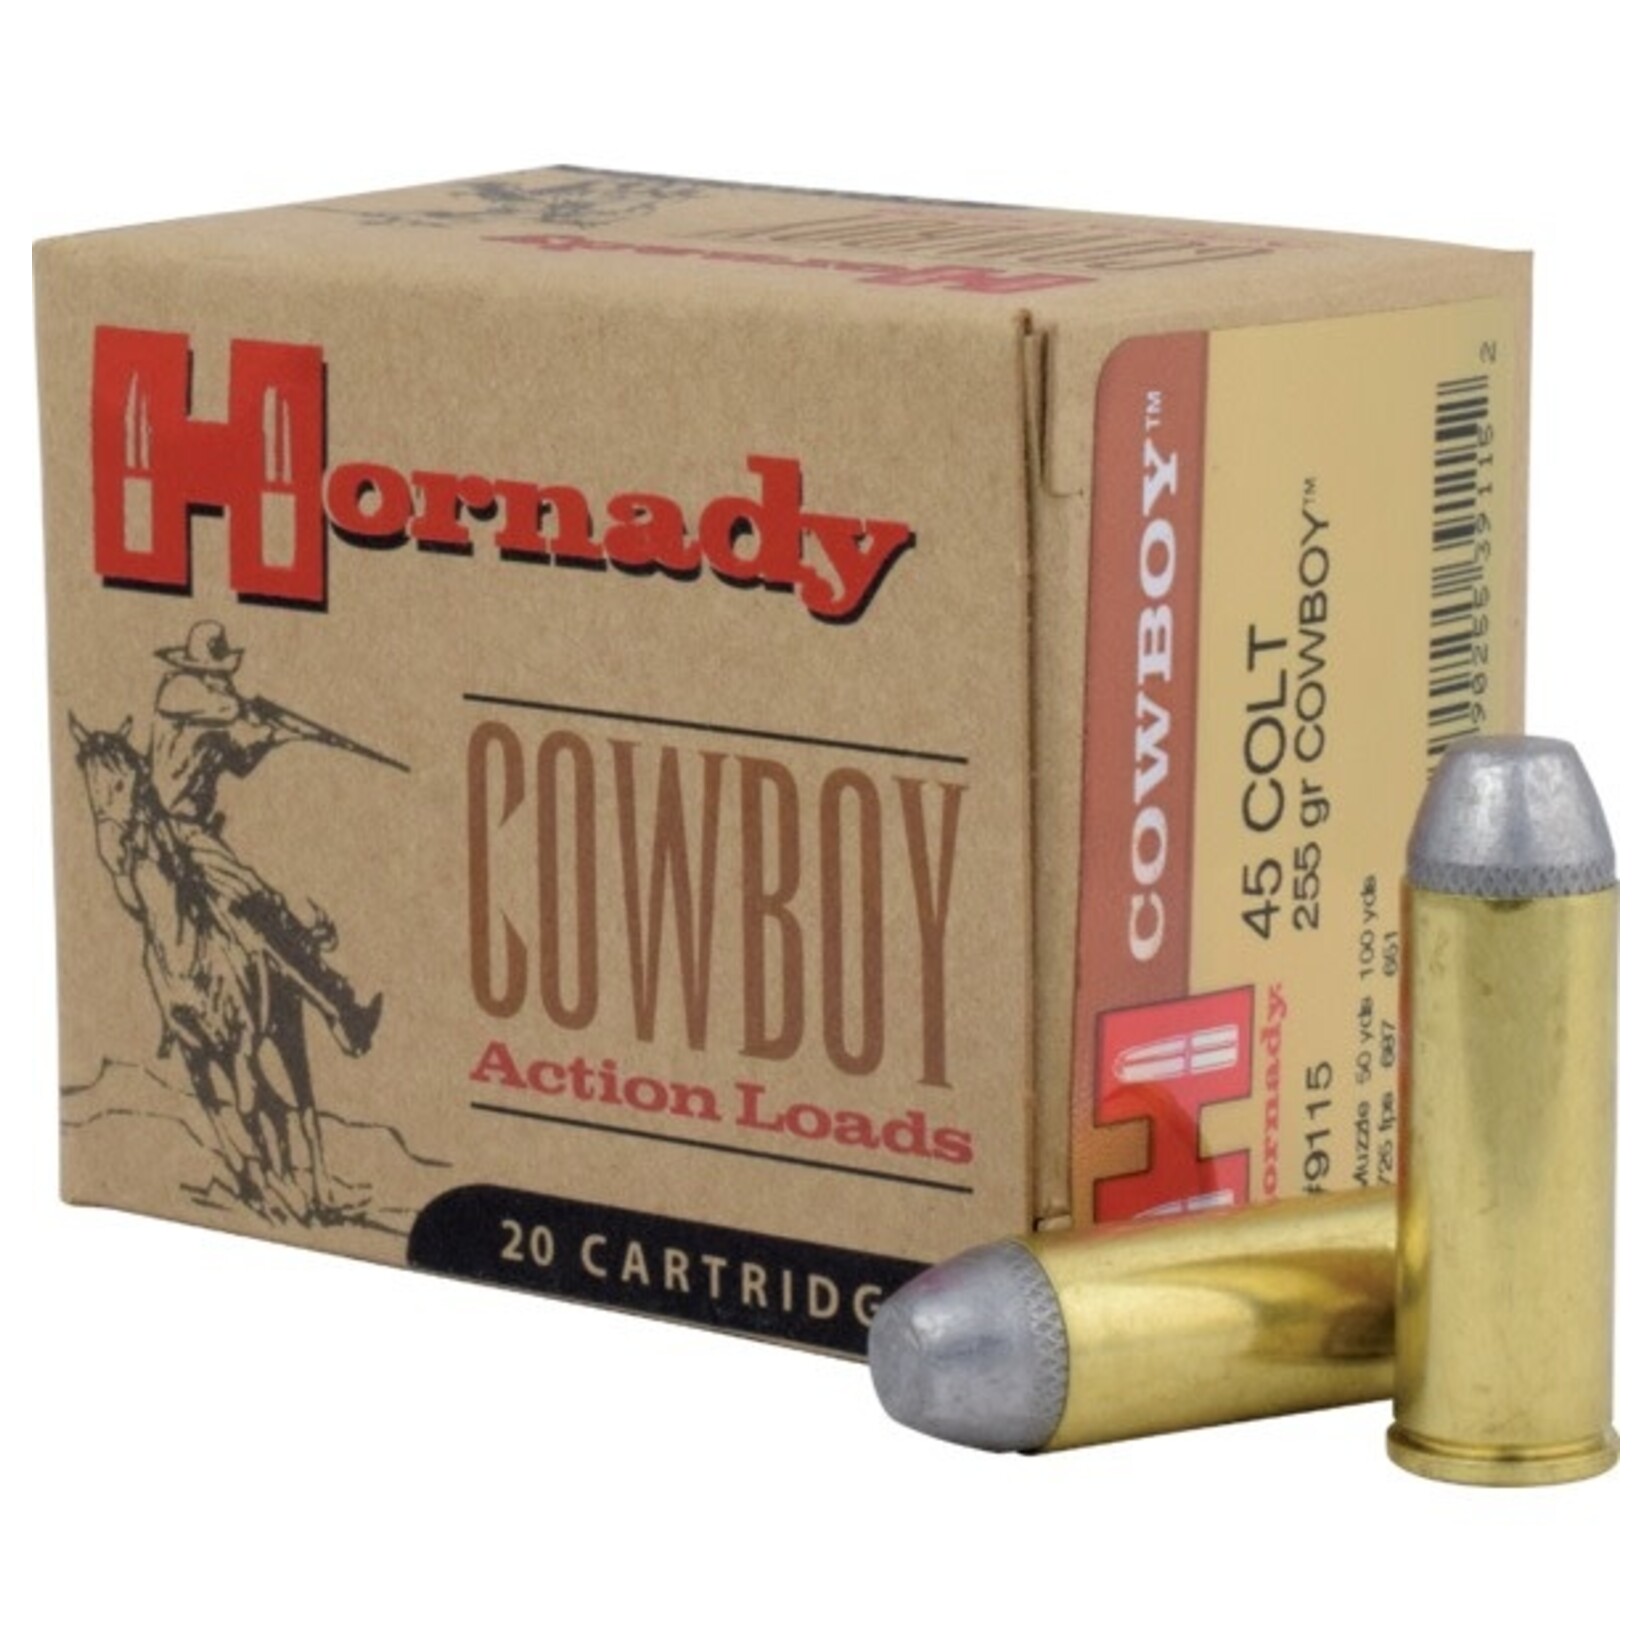 Hornady Hornady 45 Colt 225 gr Cowboy Ammunition 20 Rounds